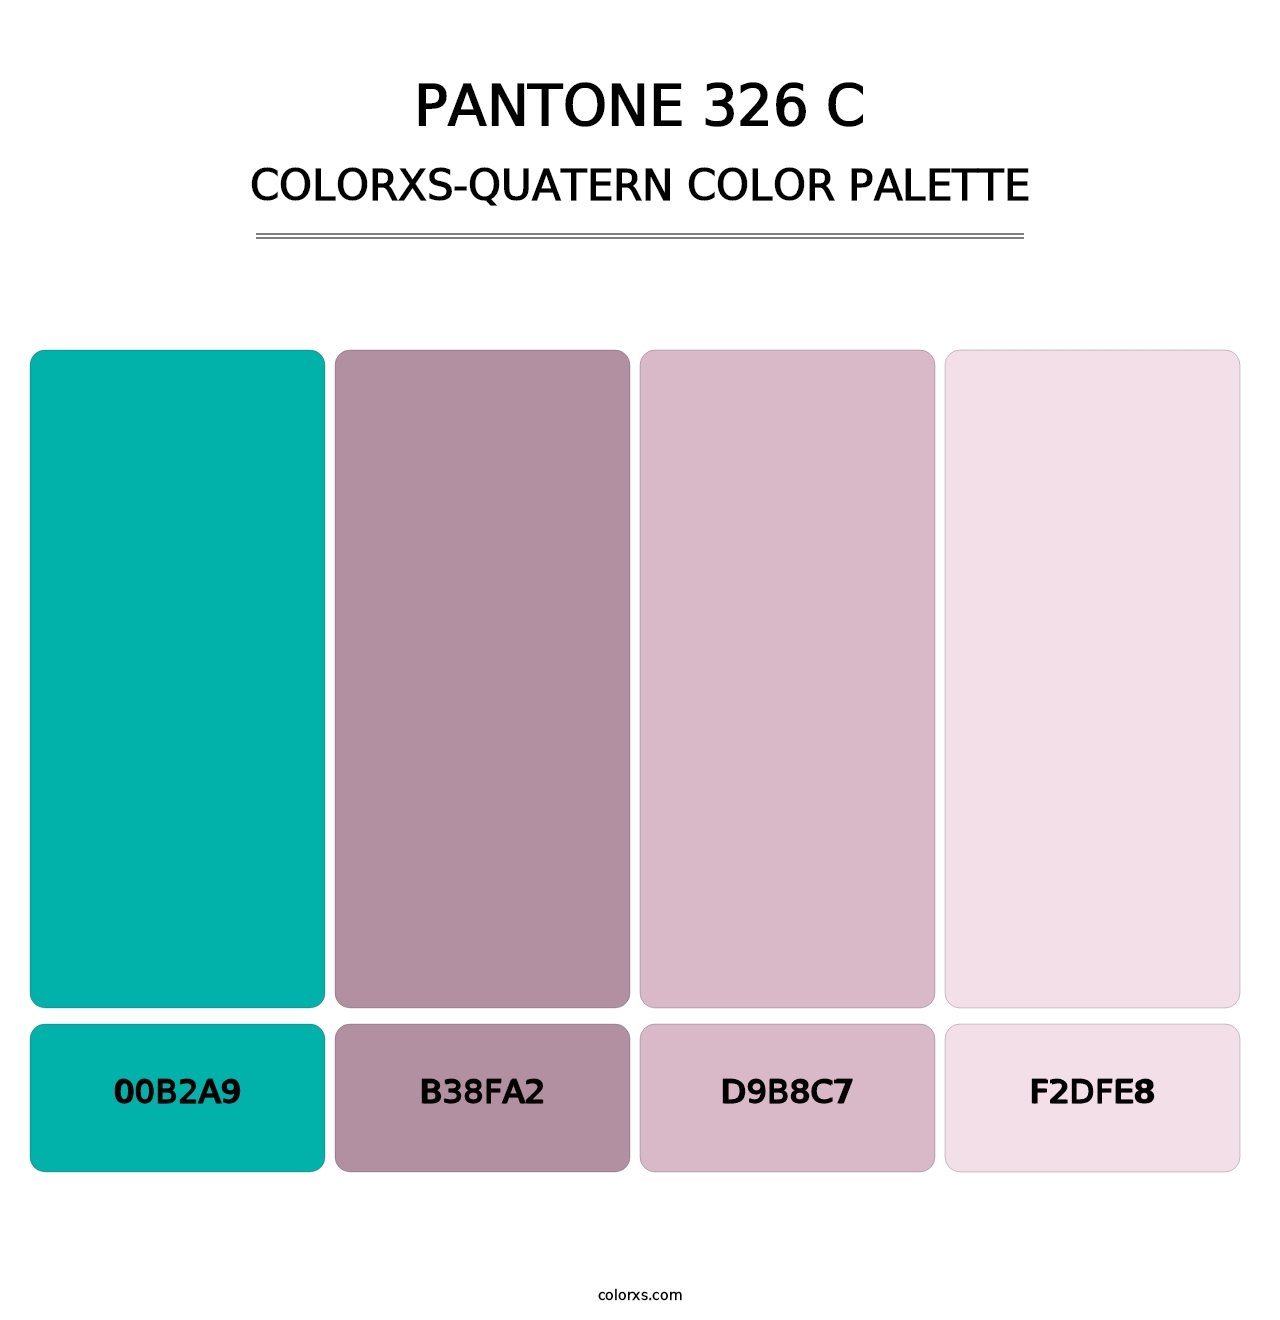 PANTONE 326 C - Colorxs Quatern Palette